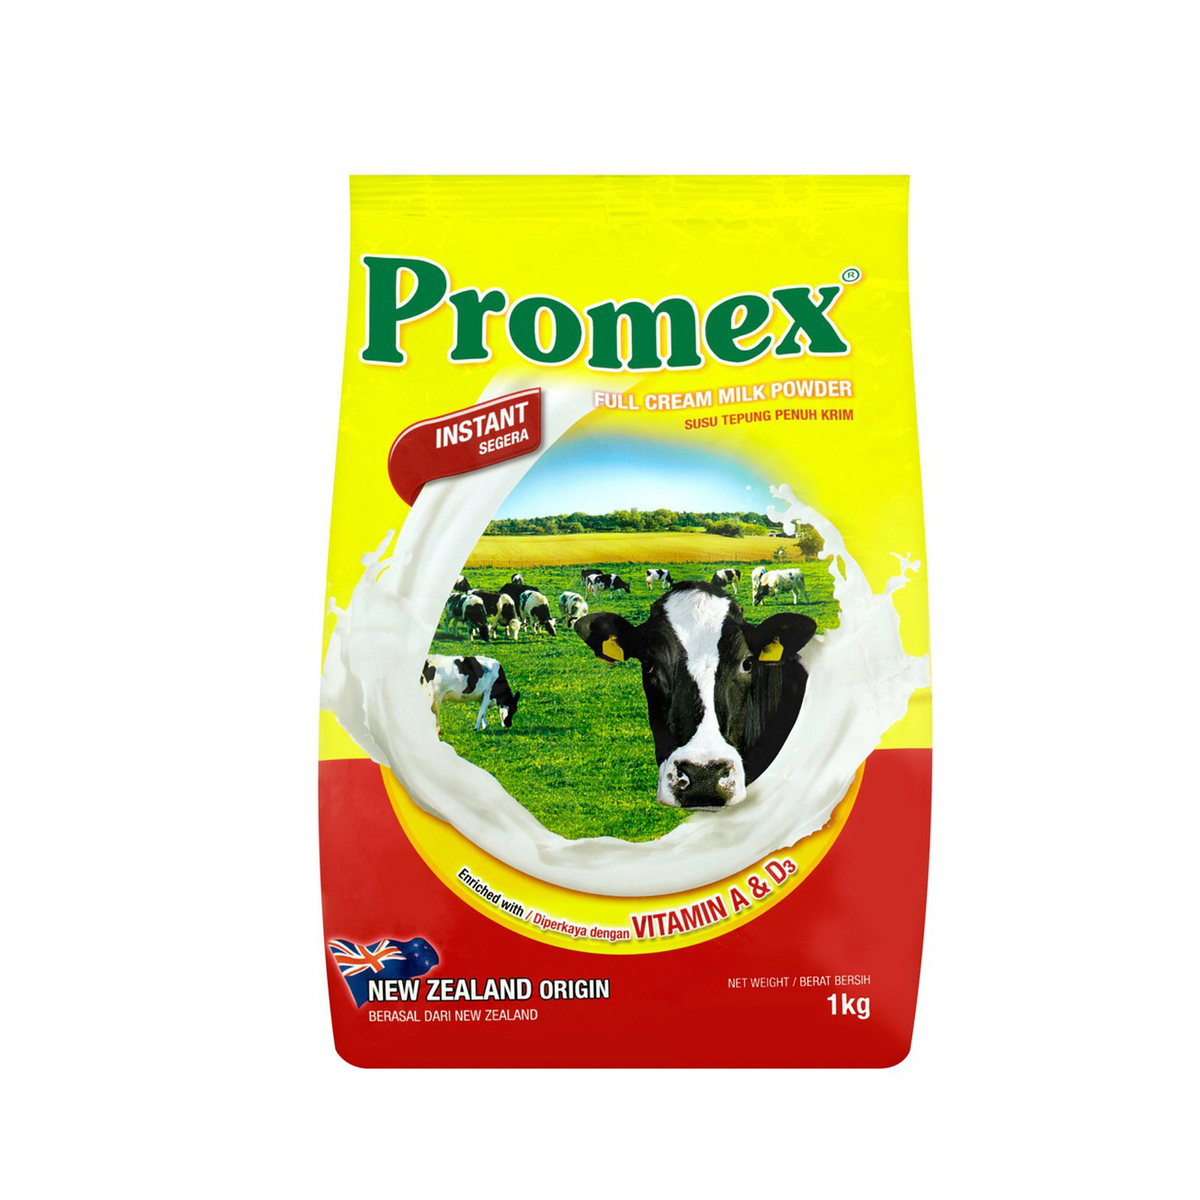 Promex instant Milk Powder. Full Cream Milk Powder.